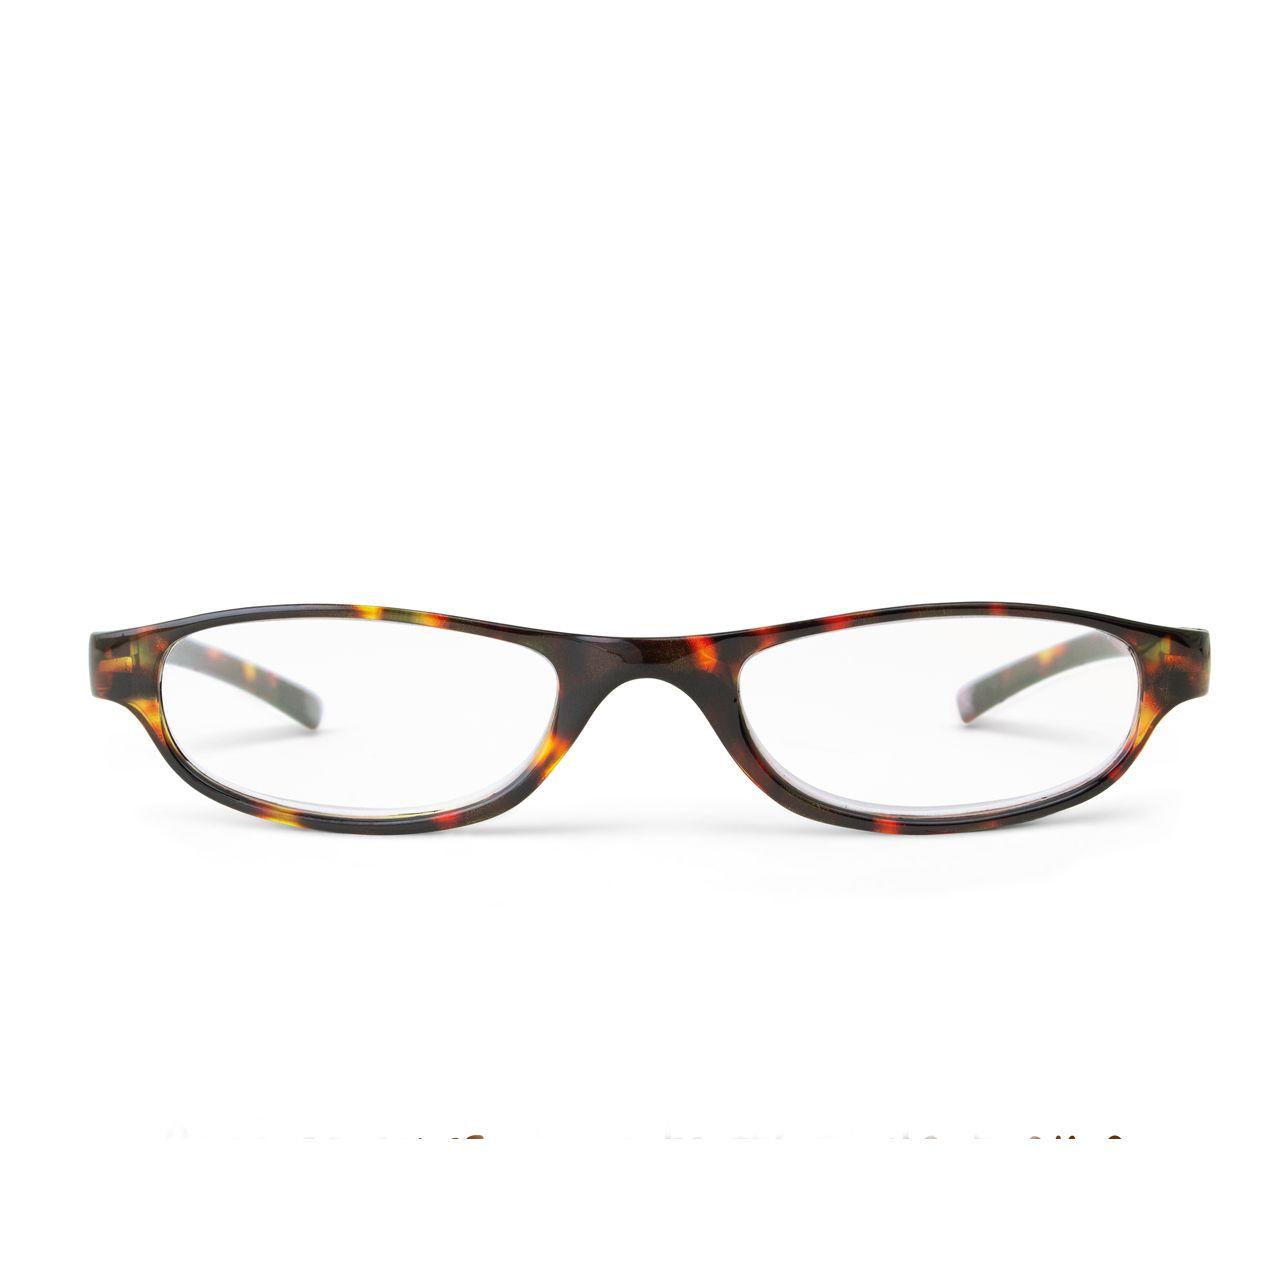 Pocket Reading Glasses Tortoiseshell-2